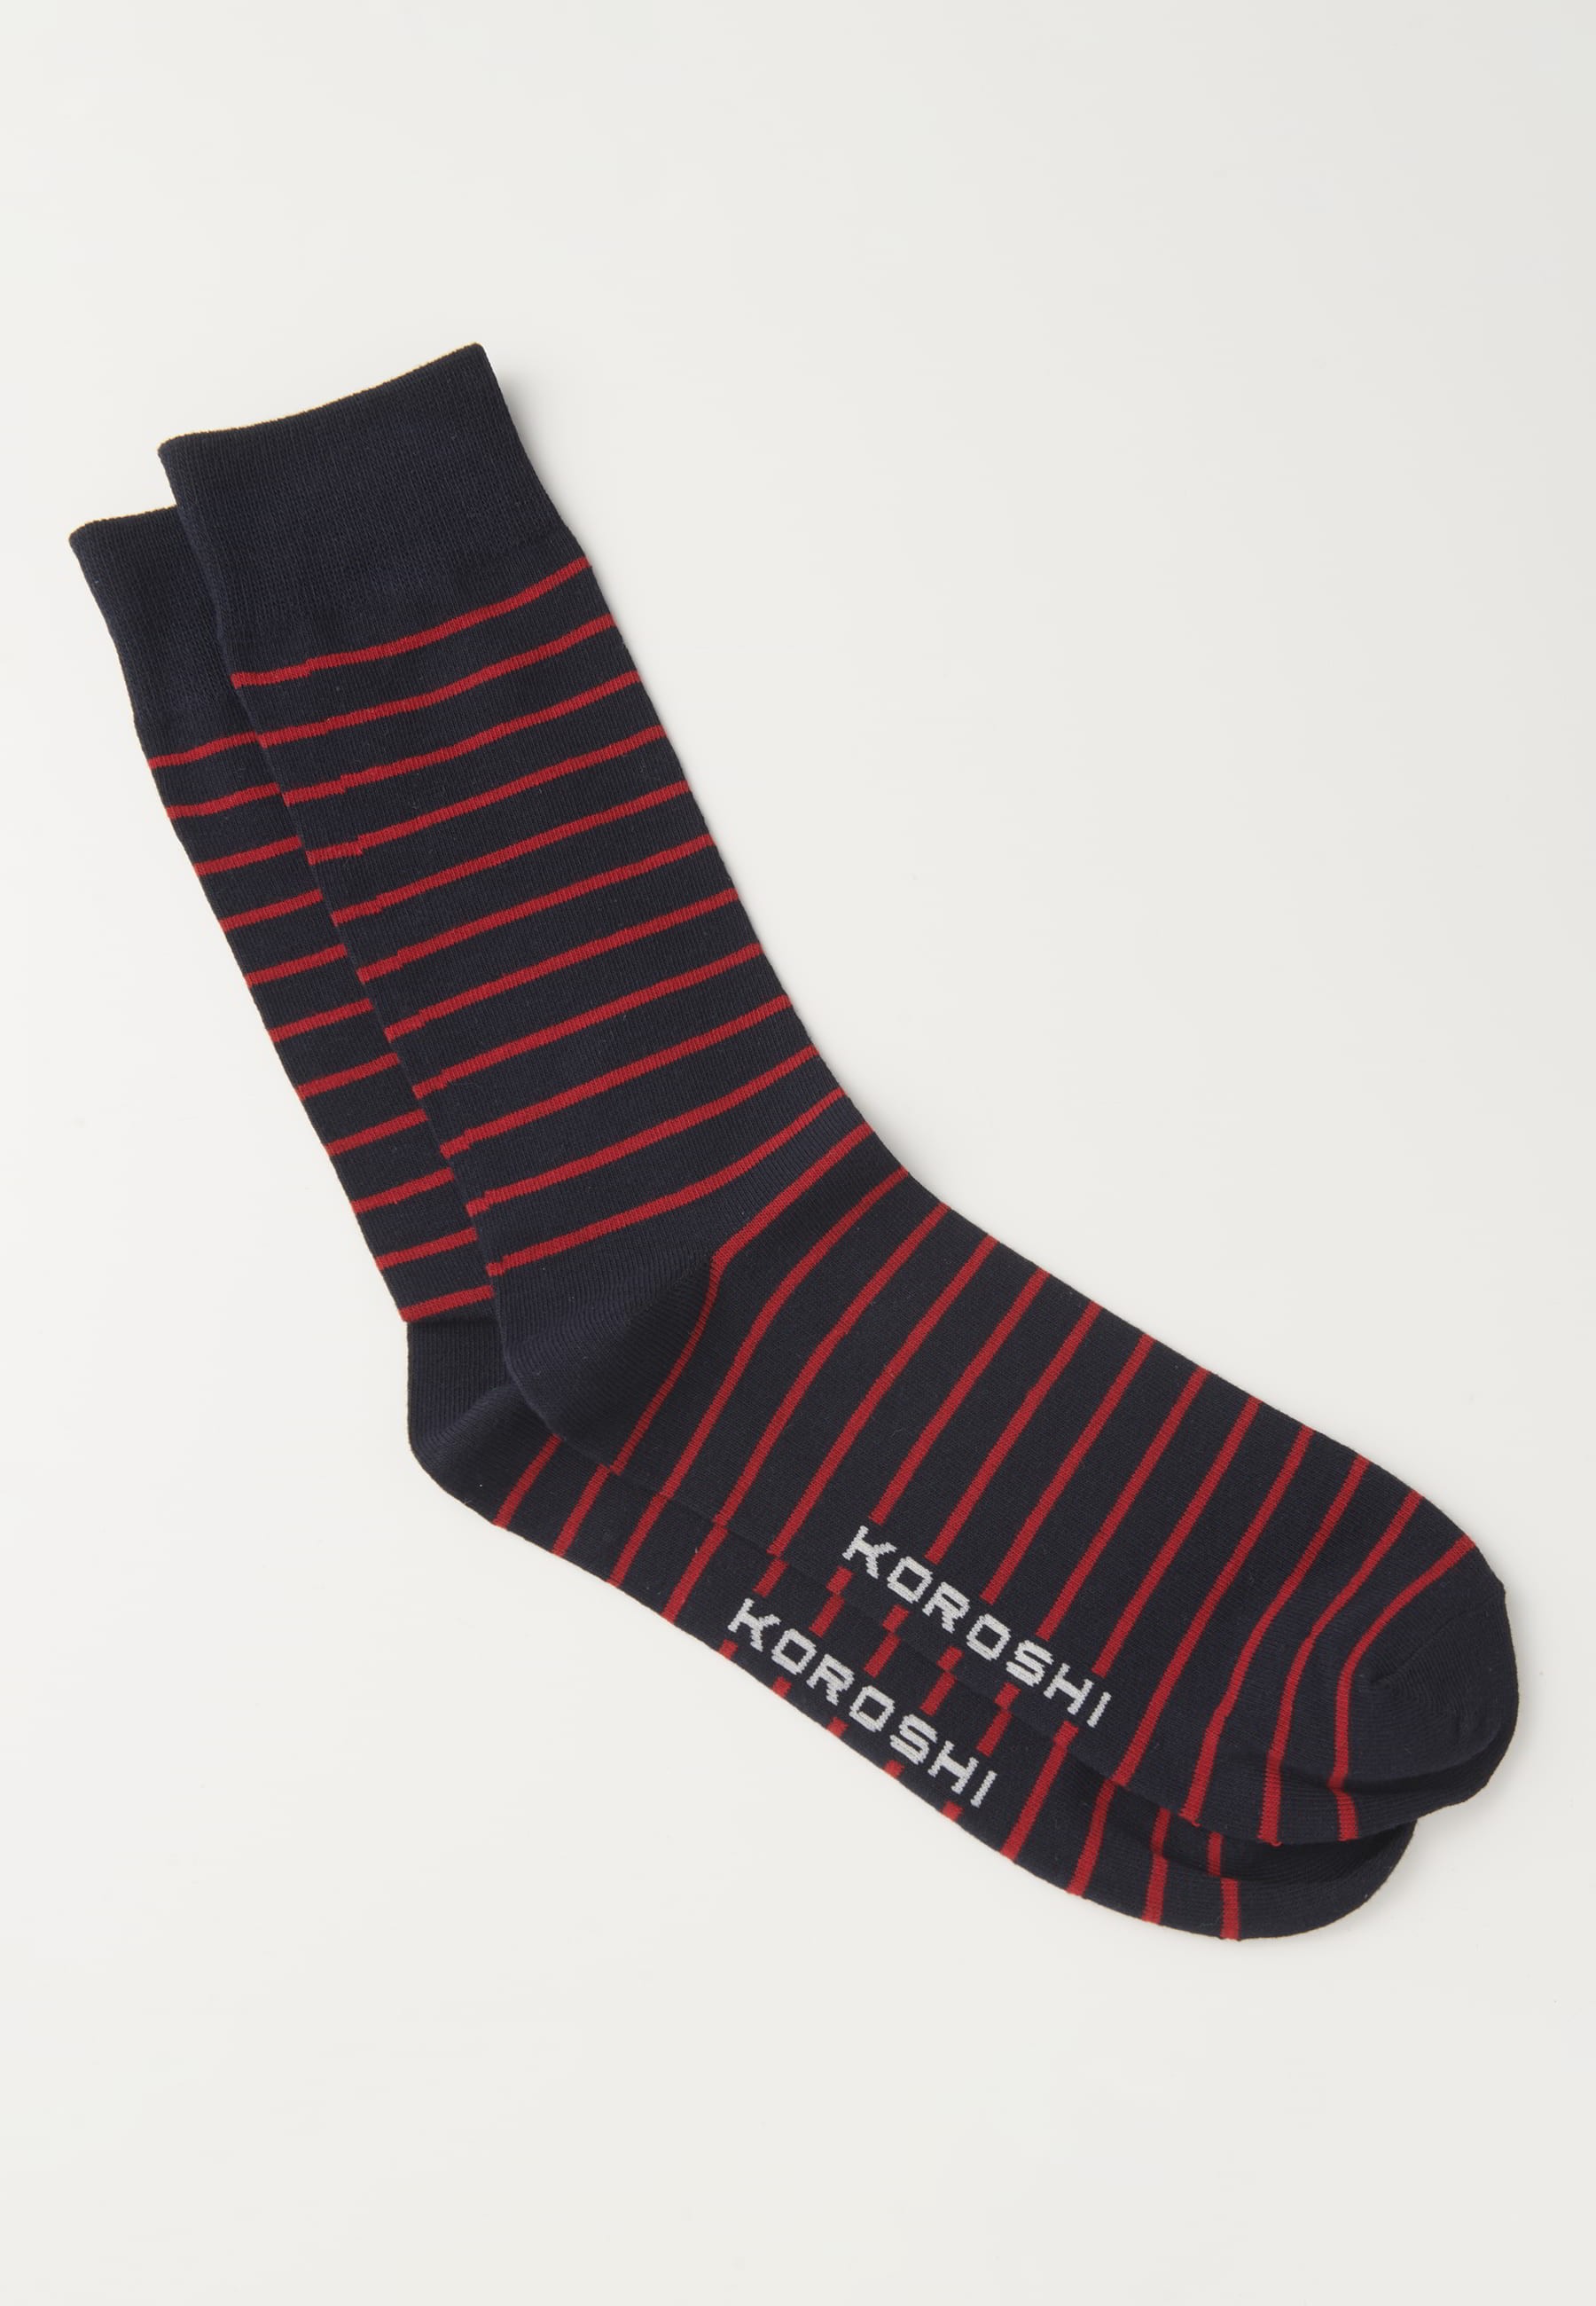 Packung mit drei Socken in verschiedenen Farben für Herren